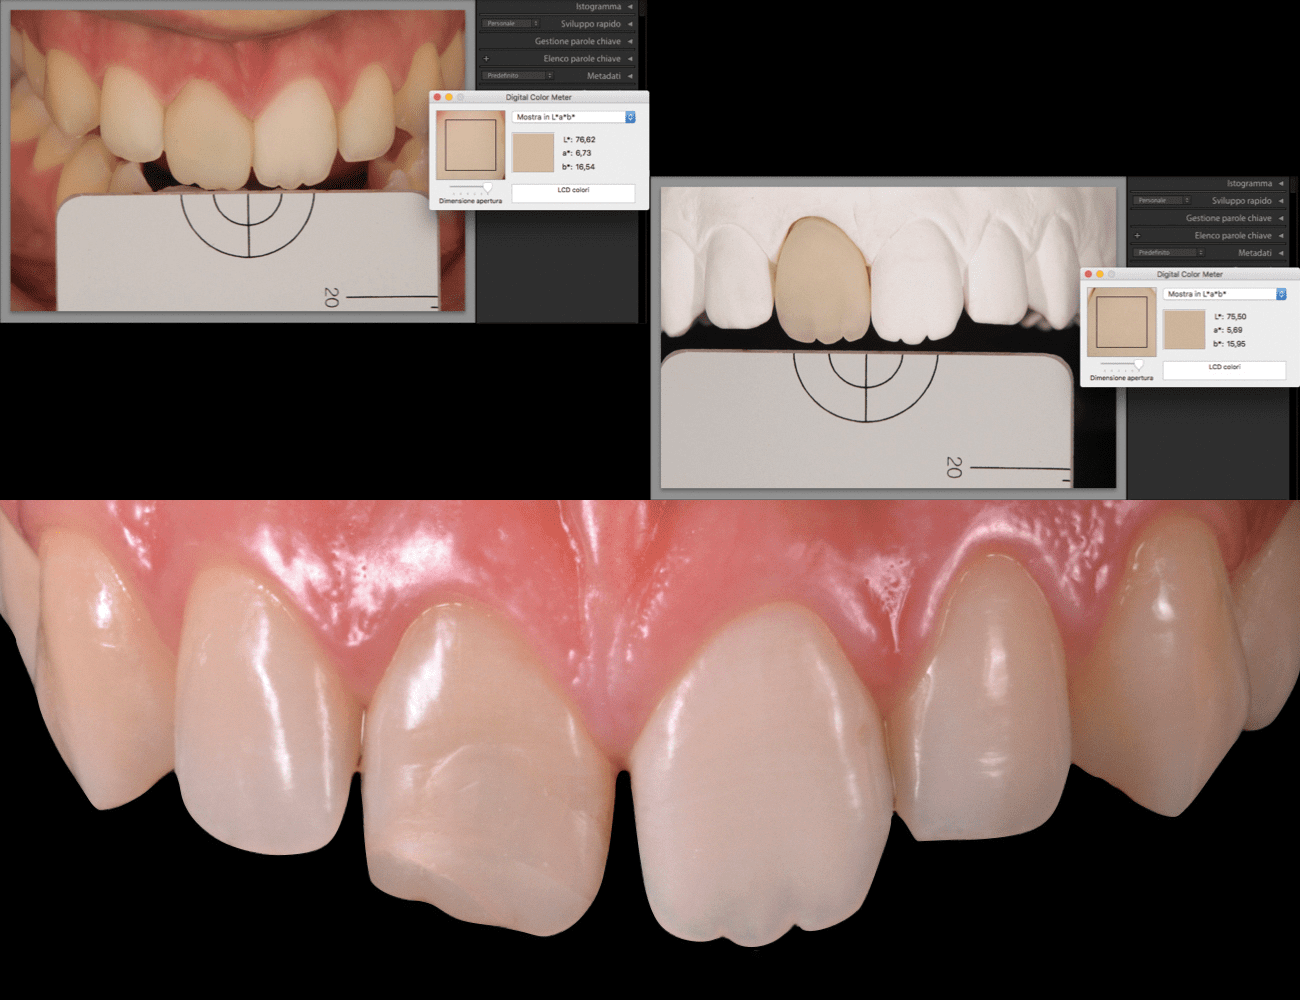 1 / Misurazione digitale del colore naturale 2 / Situazione iniziale, ricostruzione protesica su elemento 11 Credits: Dr. G. Dallari